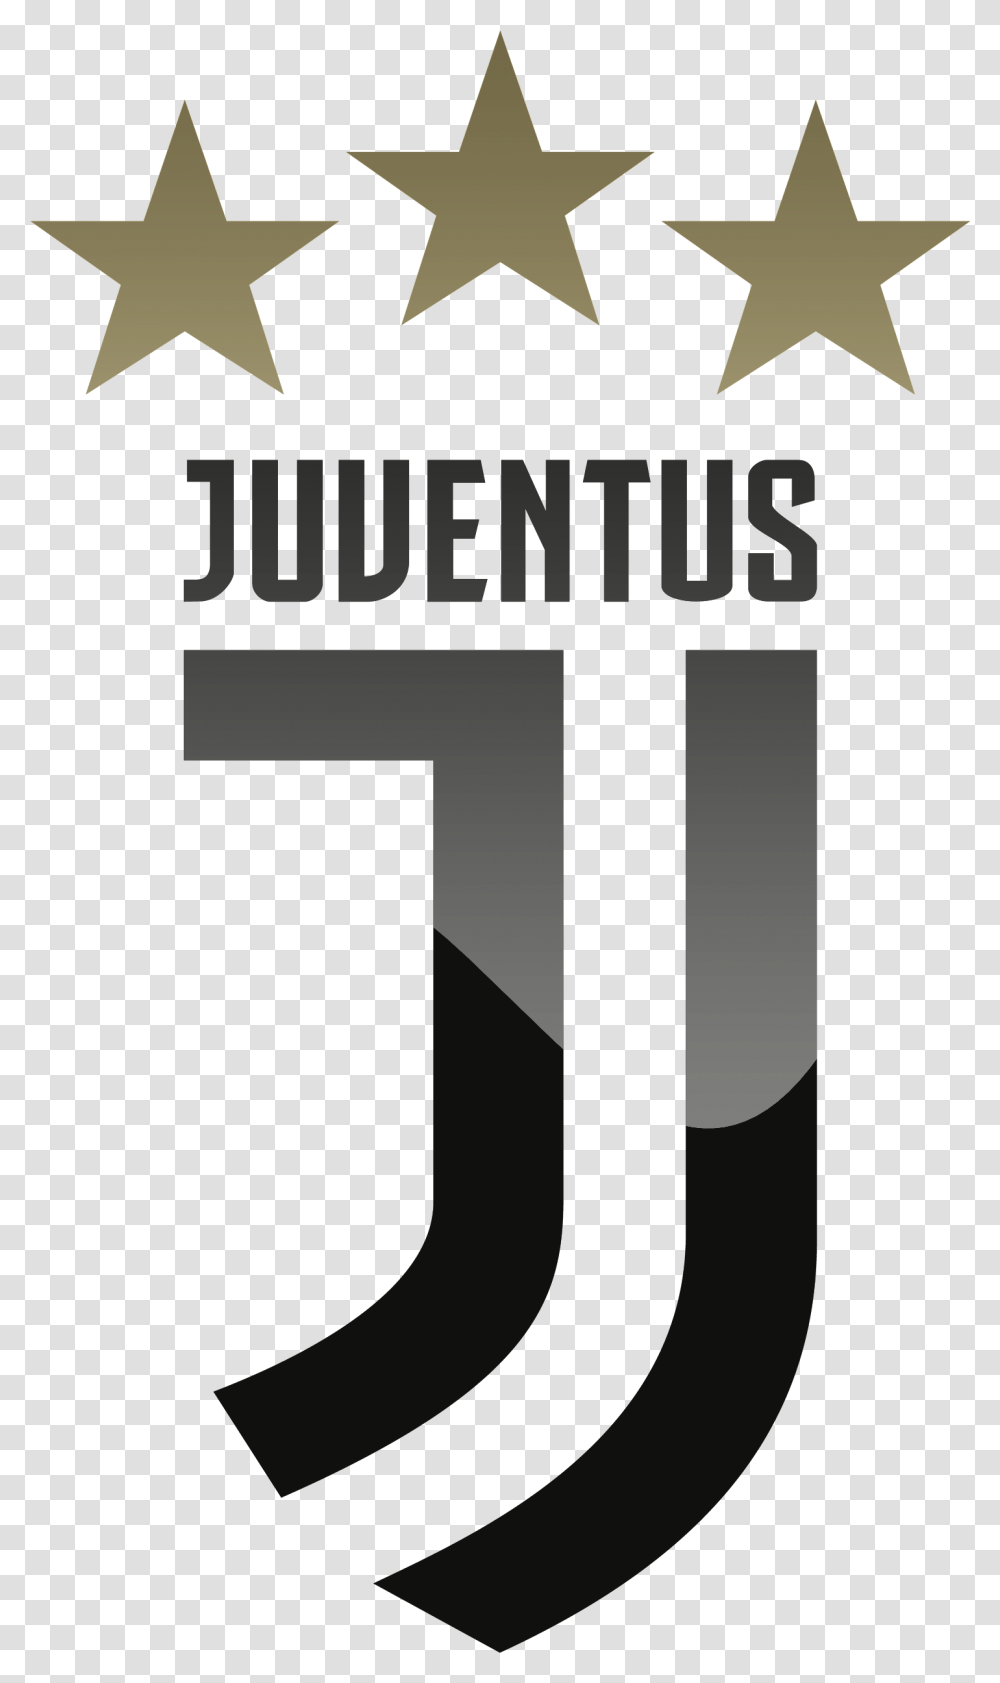 Juventus Fc Hd Logo Logo Juventus Dream League Soccer 2019, Number